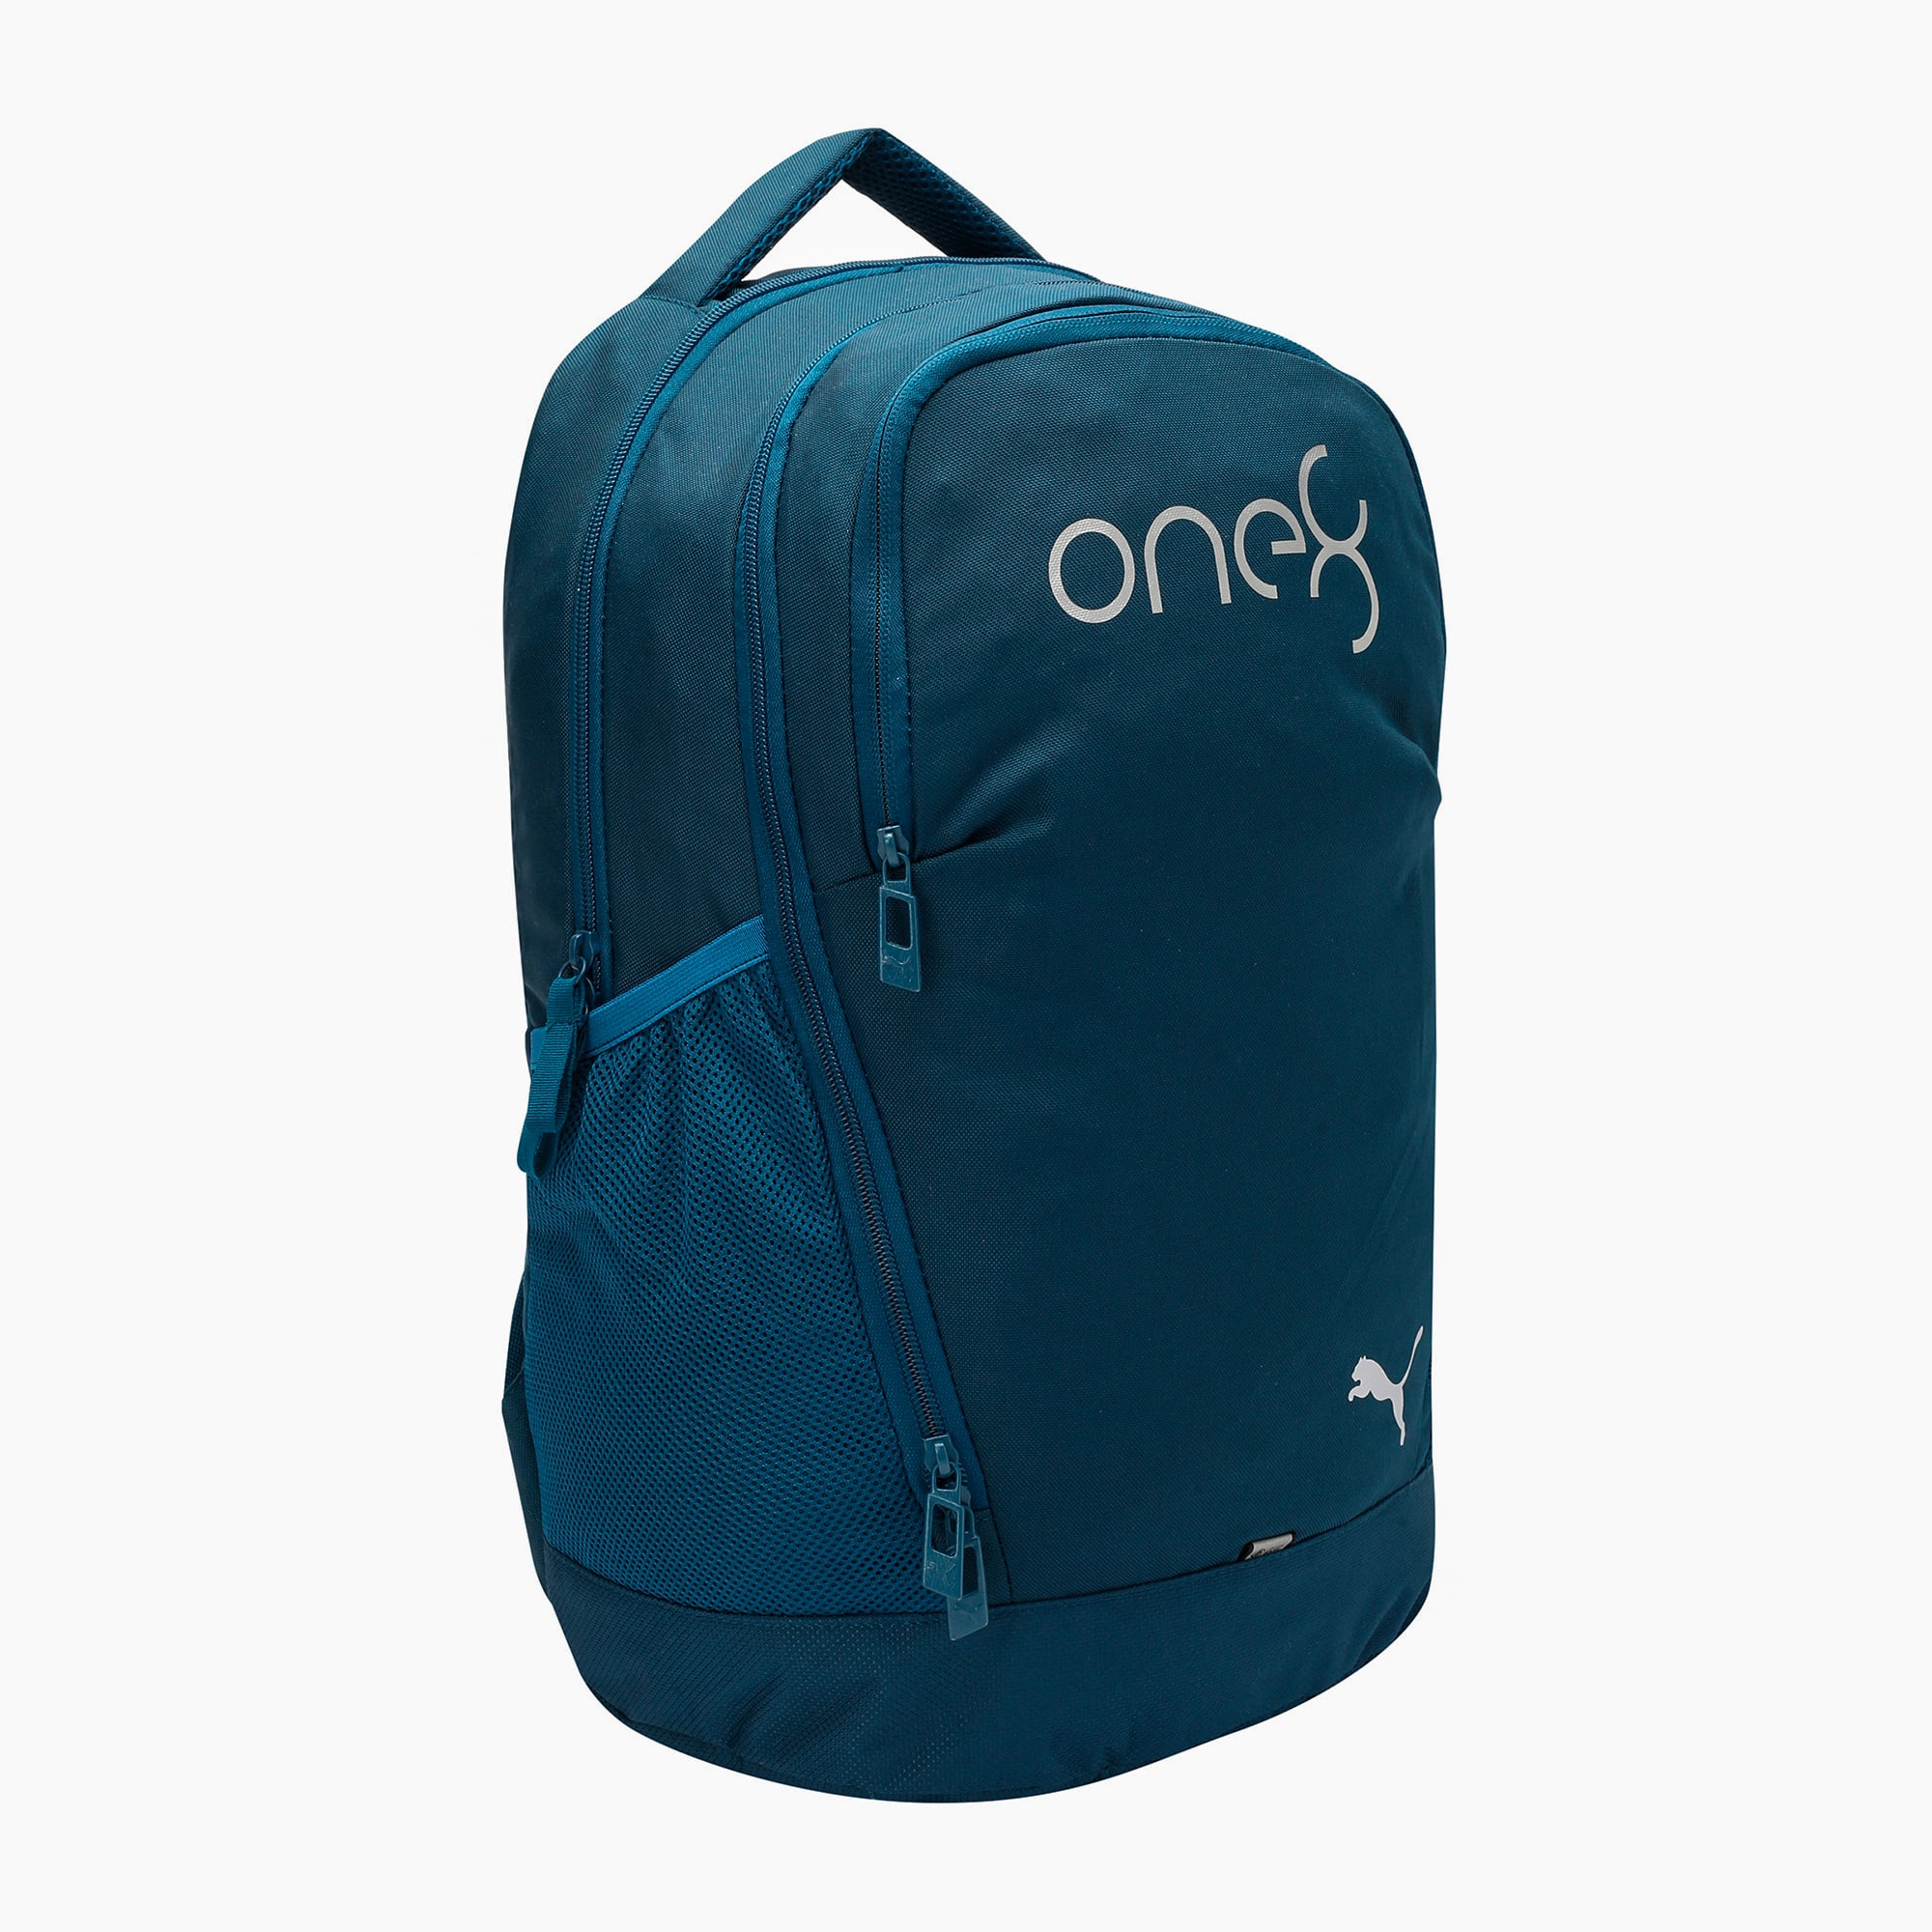 one8 PUMA x VK Hip Women's Backpack 